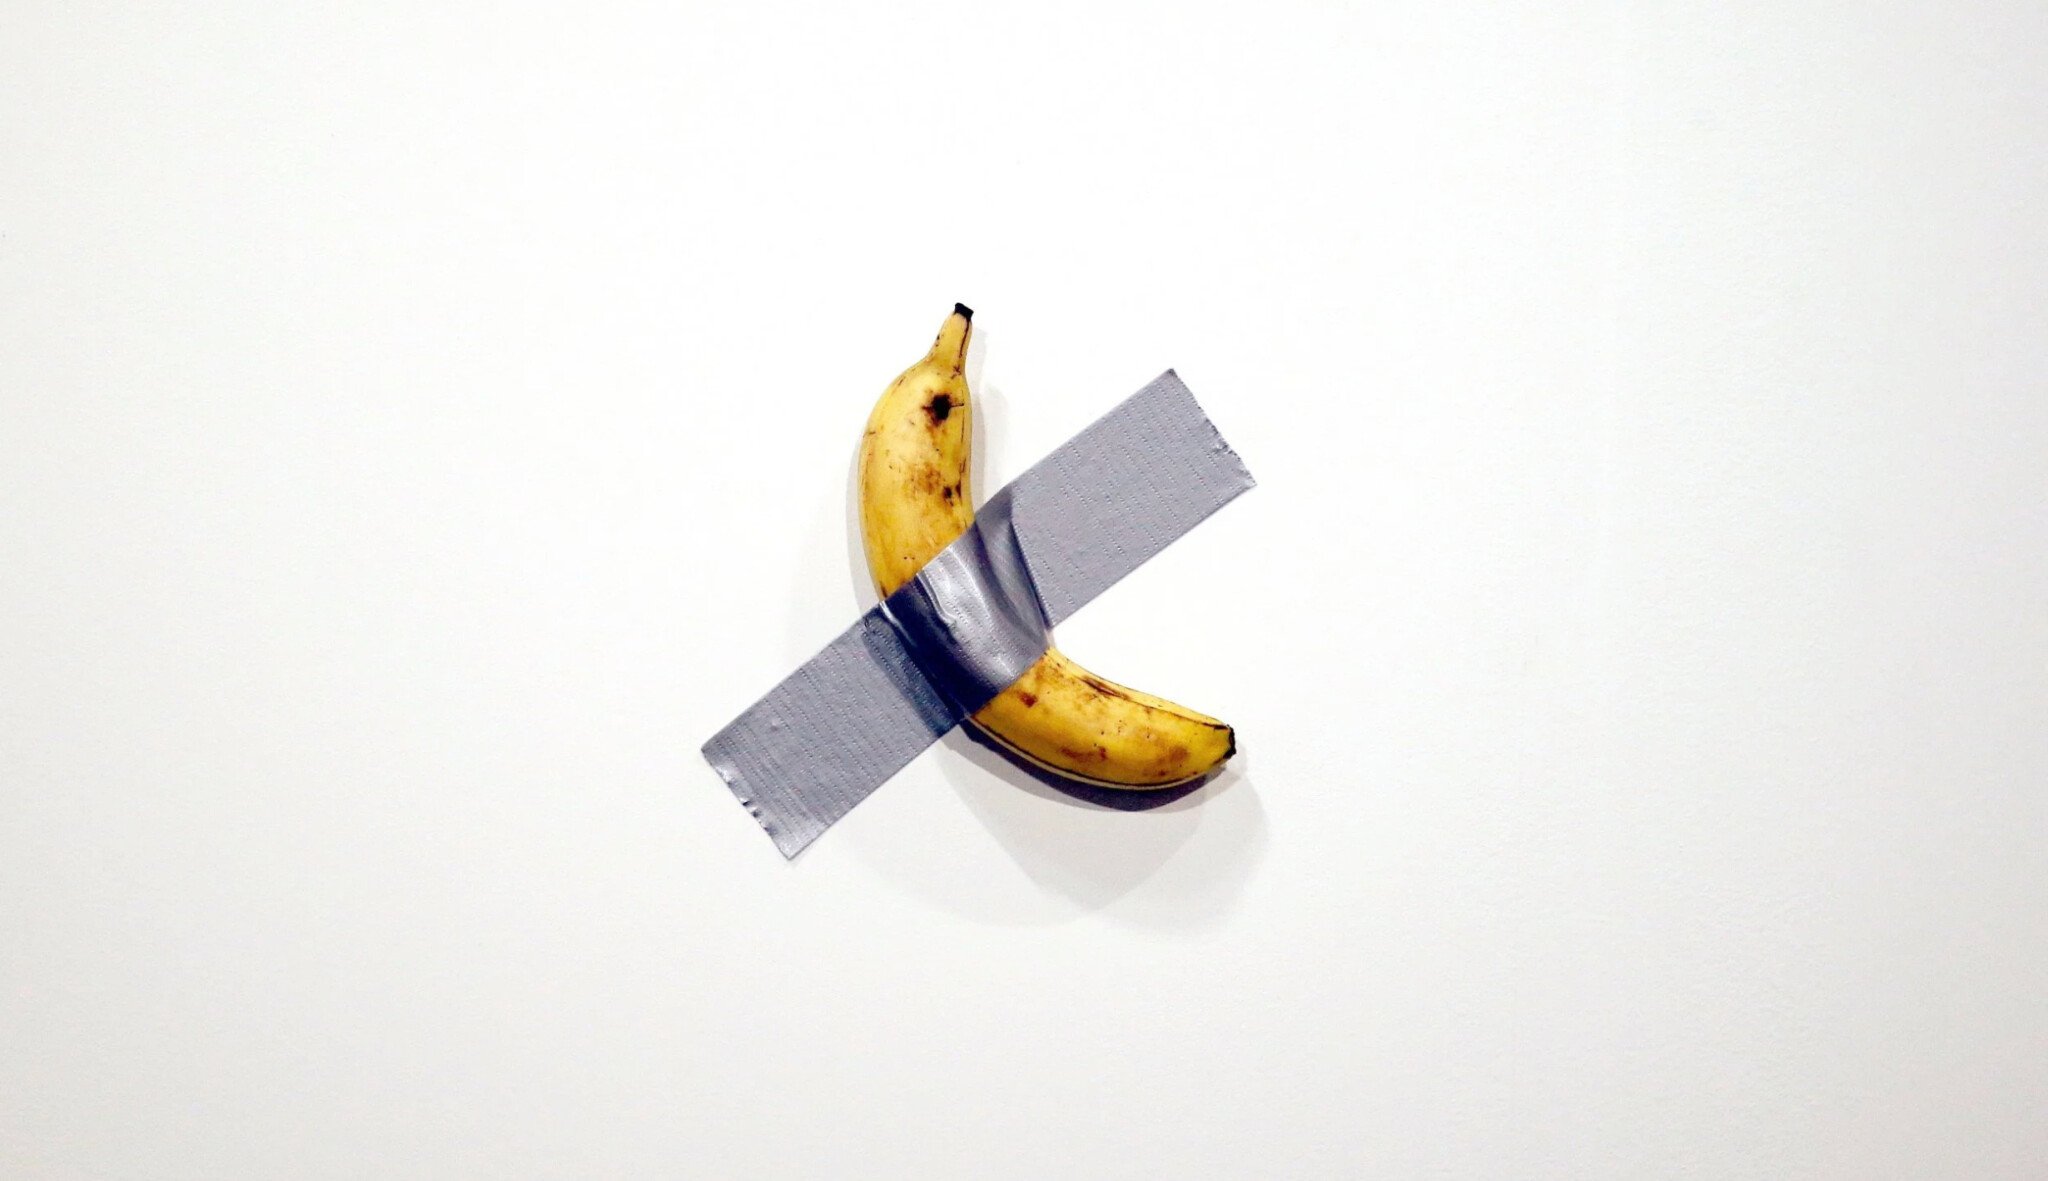 Forbes Art: Obyčejný banán? V sámošce za pár korun, v galerii za miliony